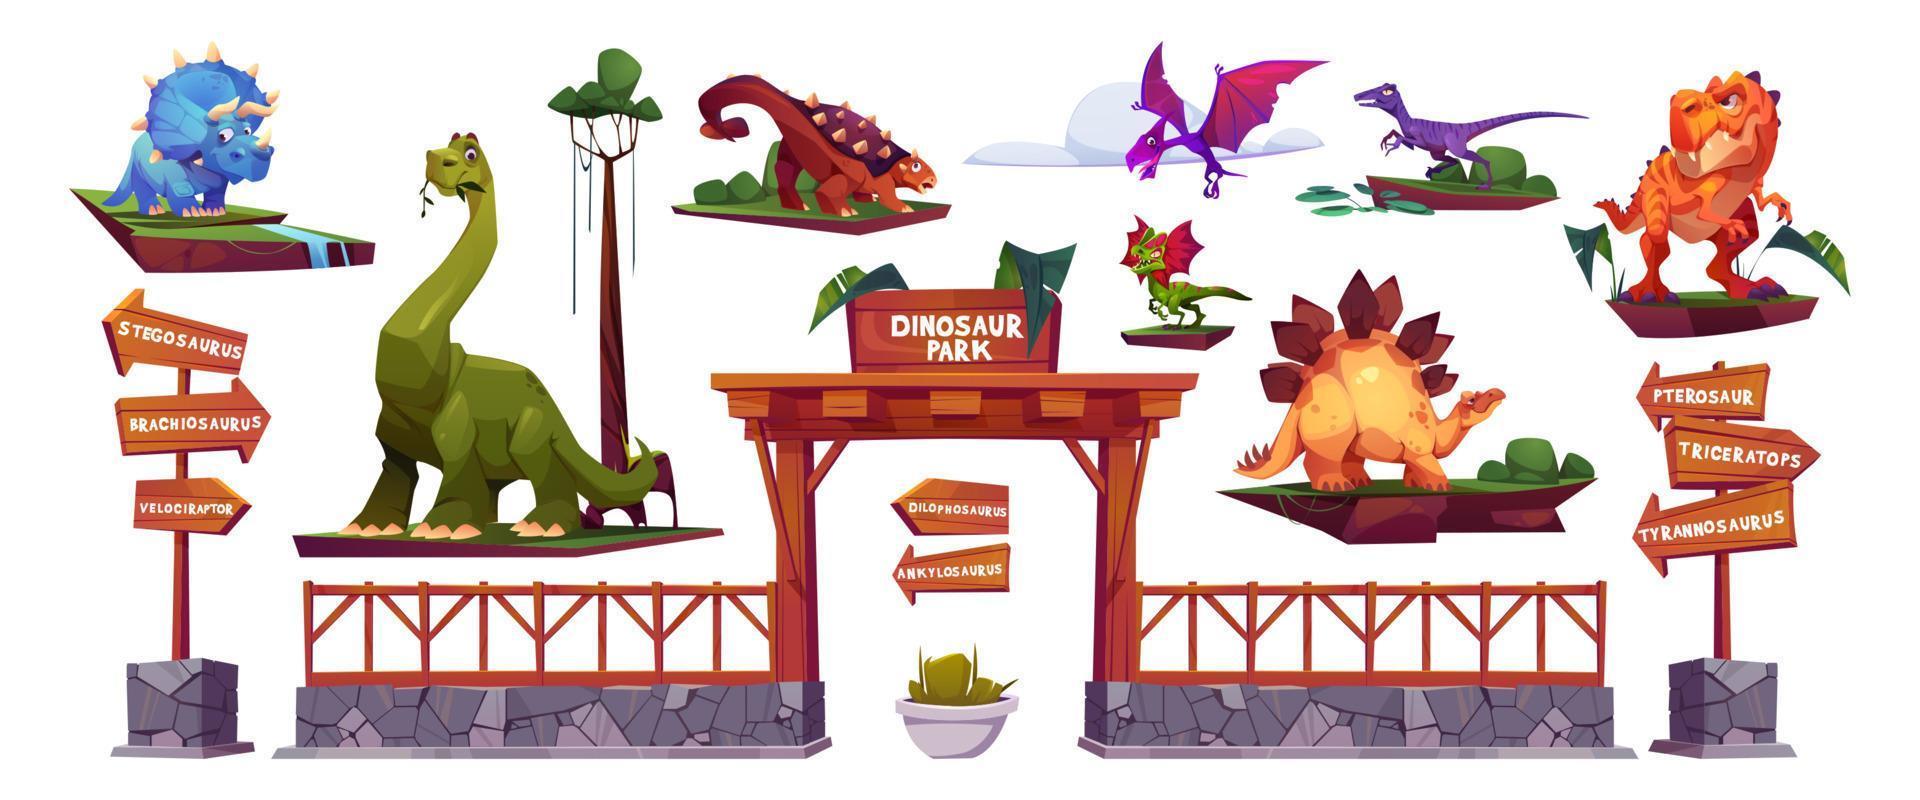 Dinosaur park cartoon characters, arrows and gates vector